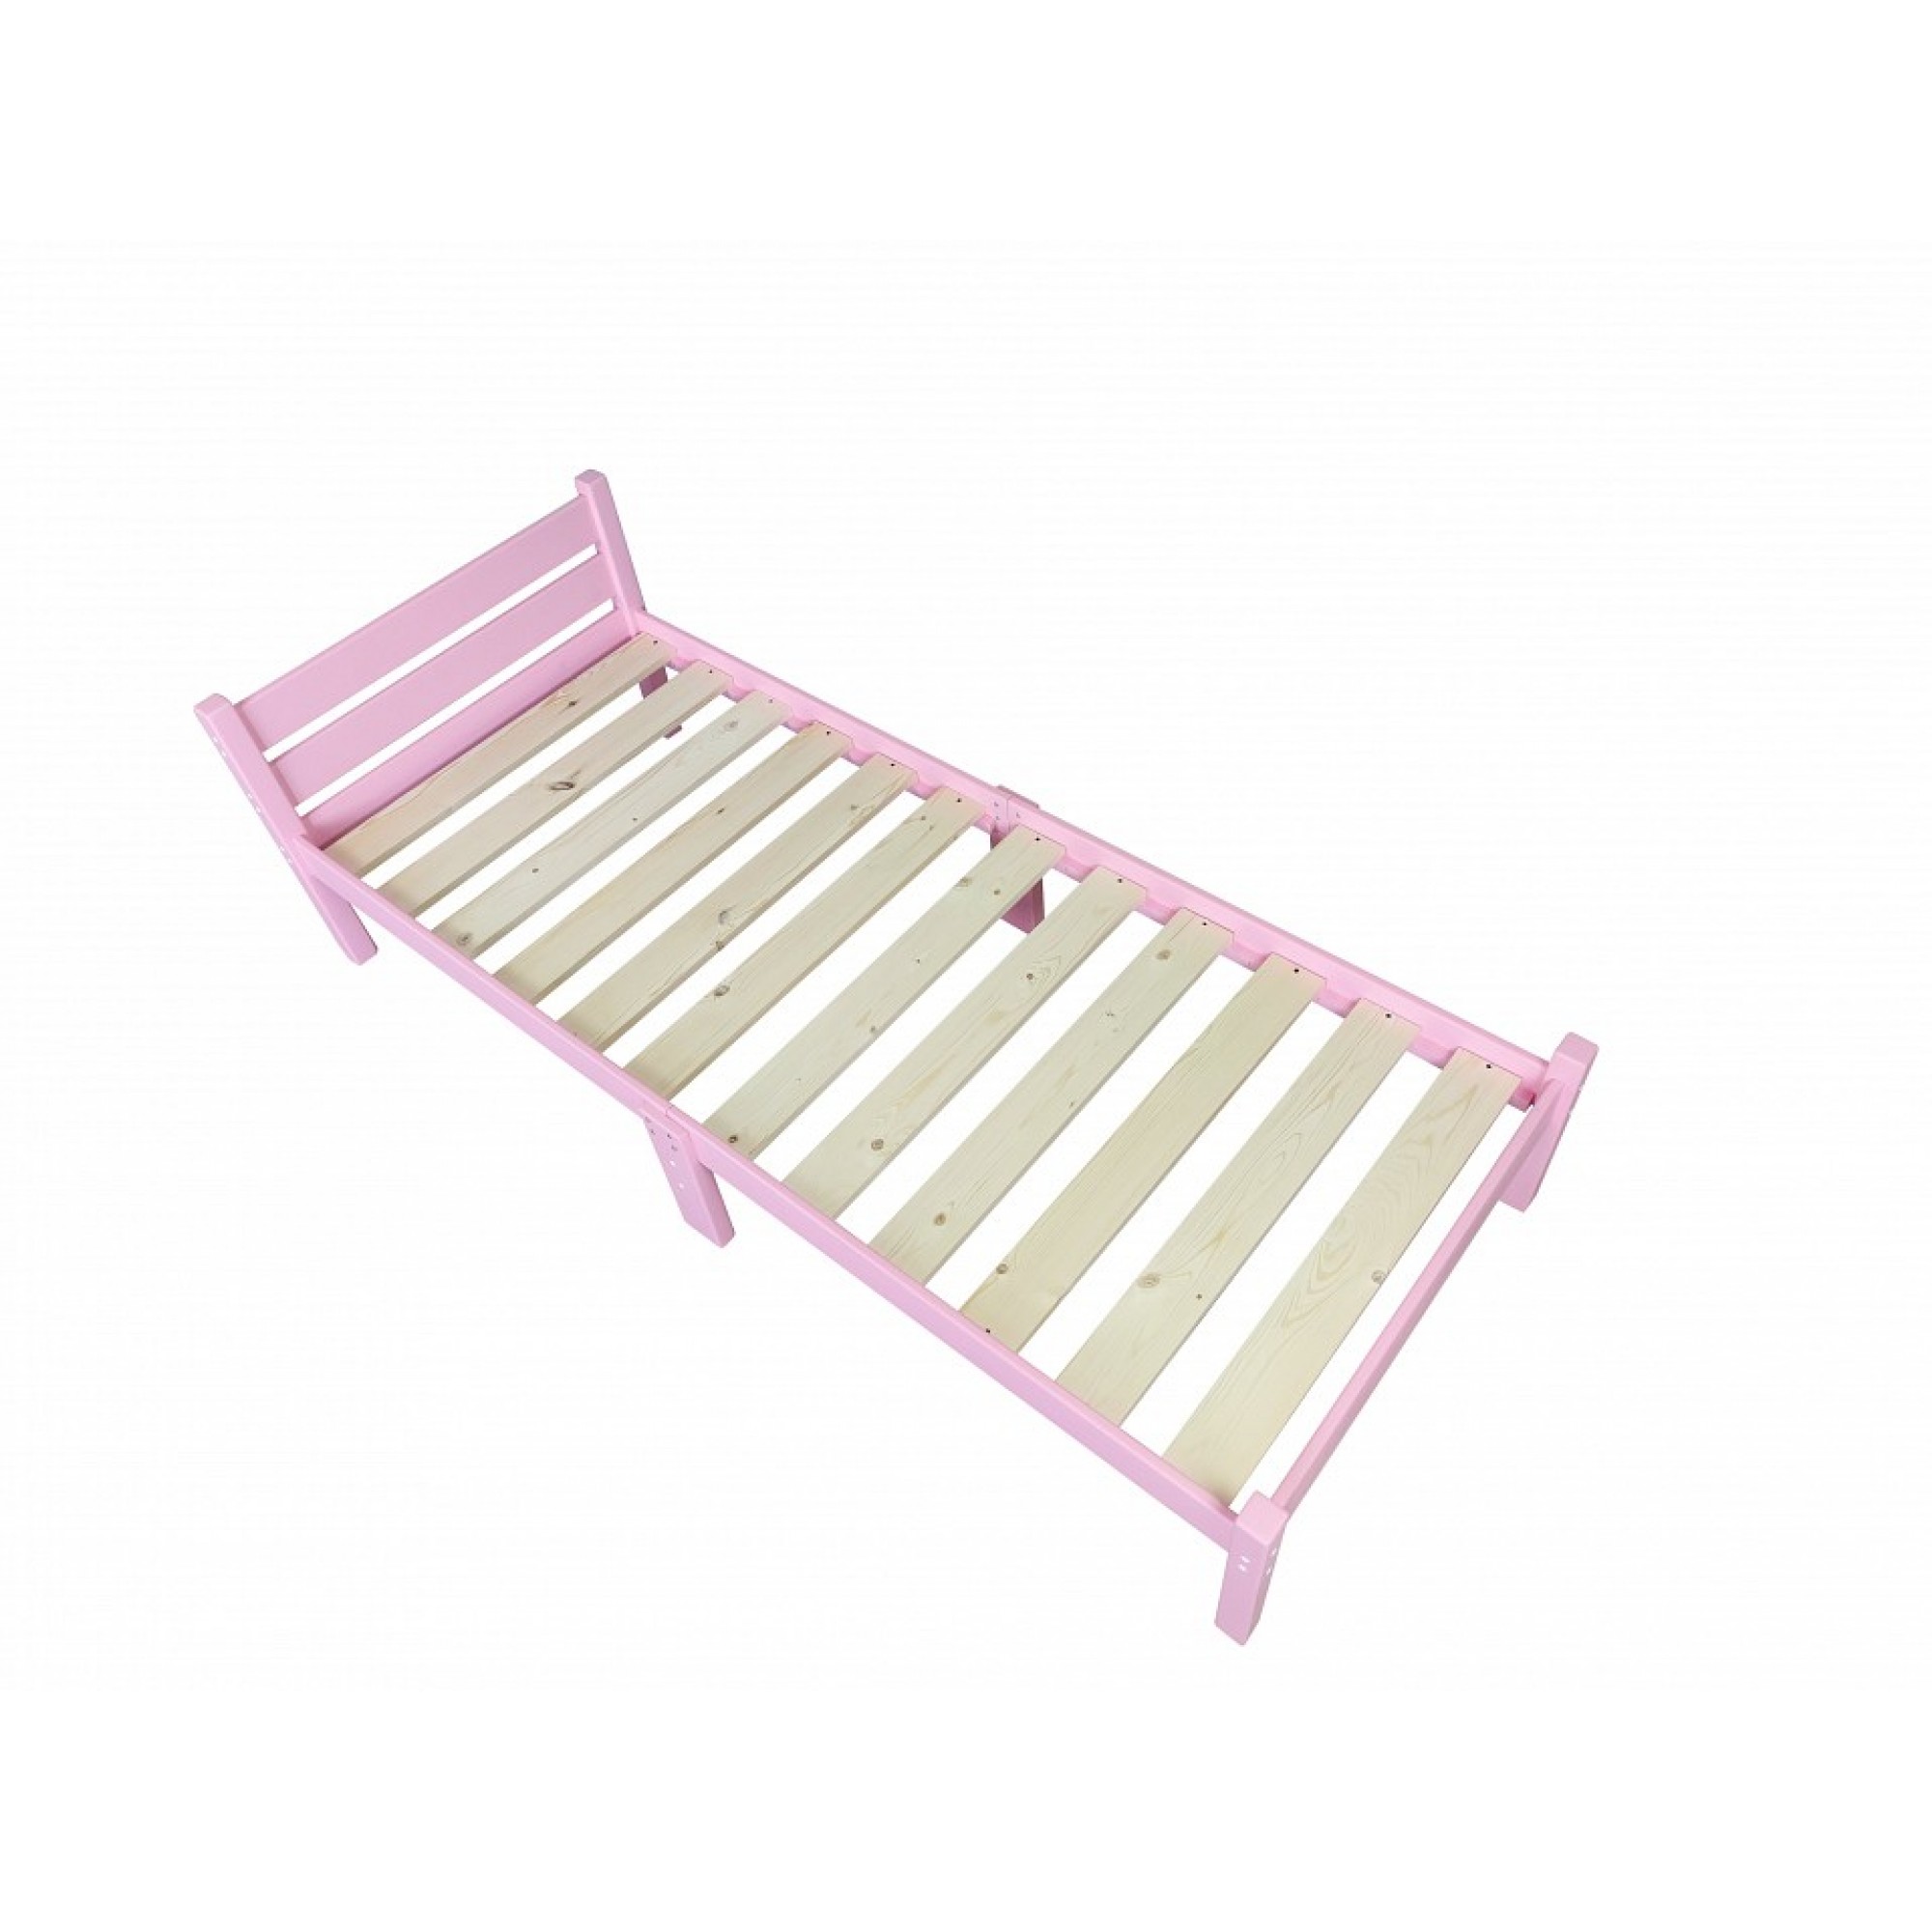 Кровать односпальная Компакт 2000x700 розовый    SLR_kompakt70roz